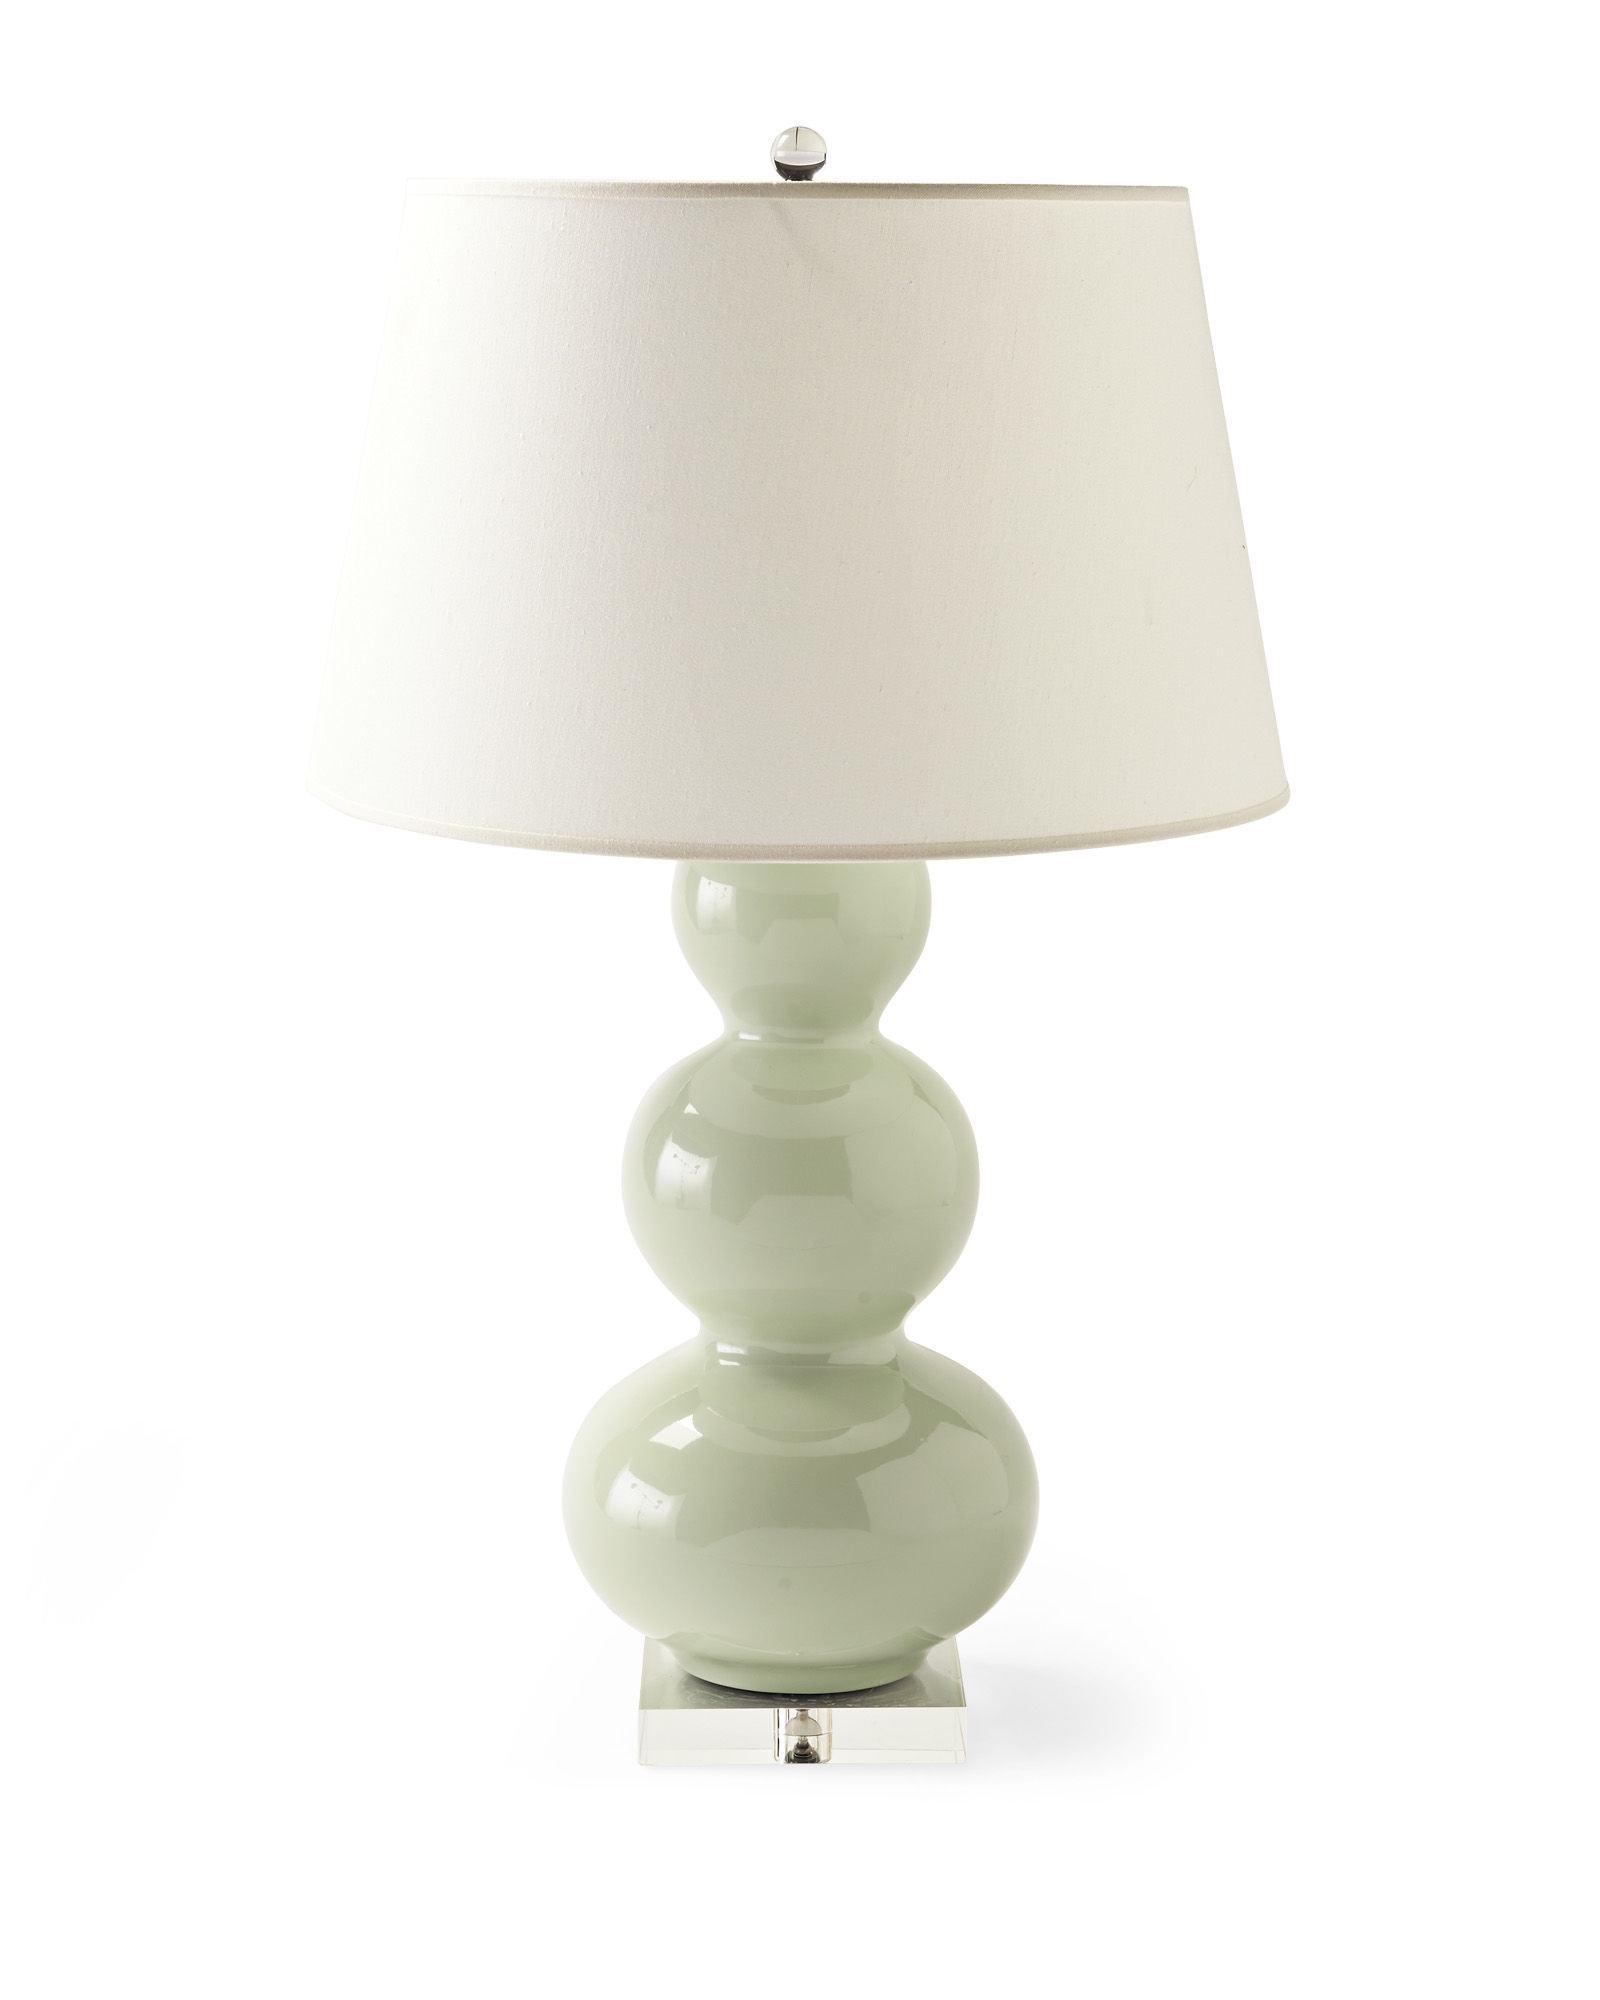 Payton Table Lamp-Seaglass - Image 0